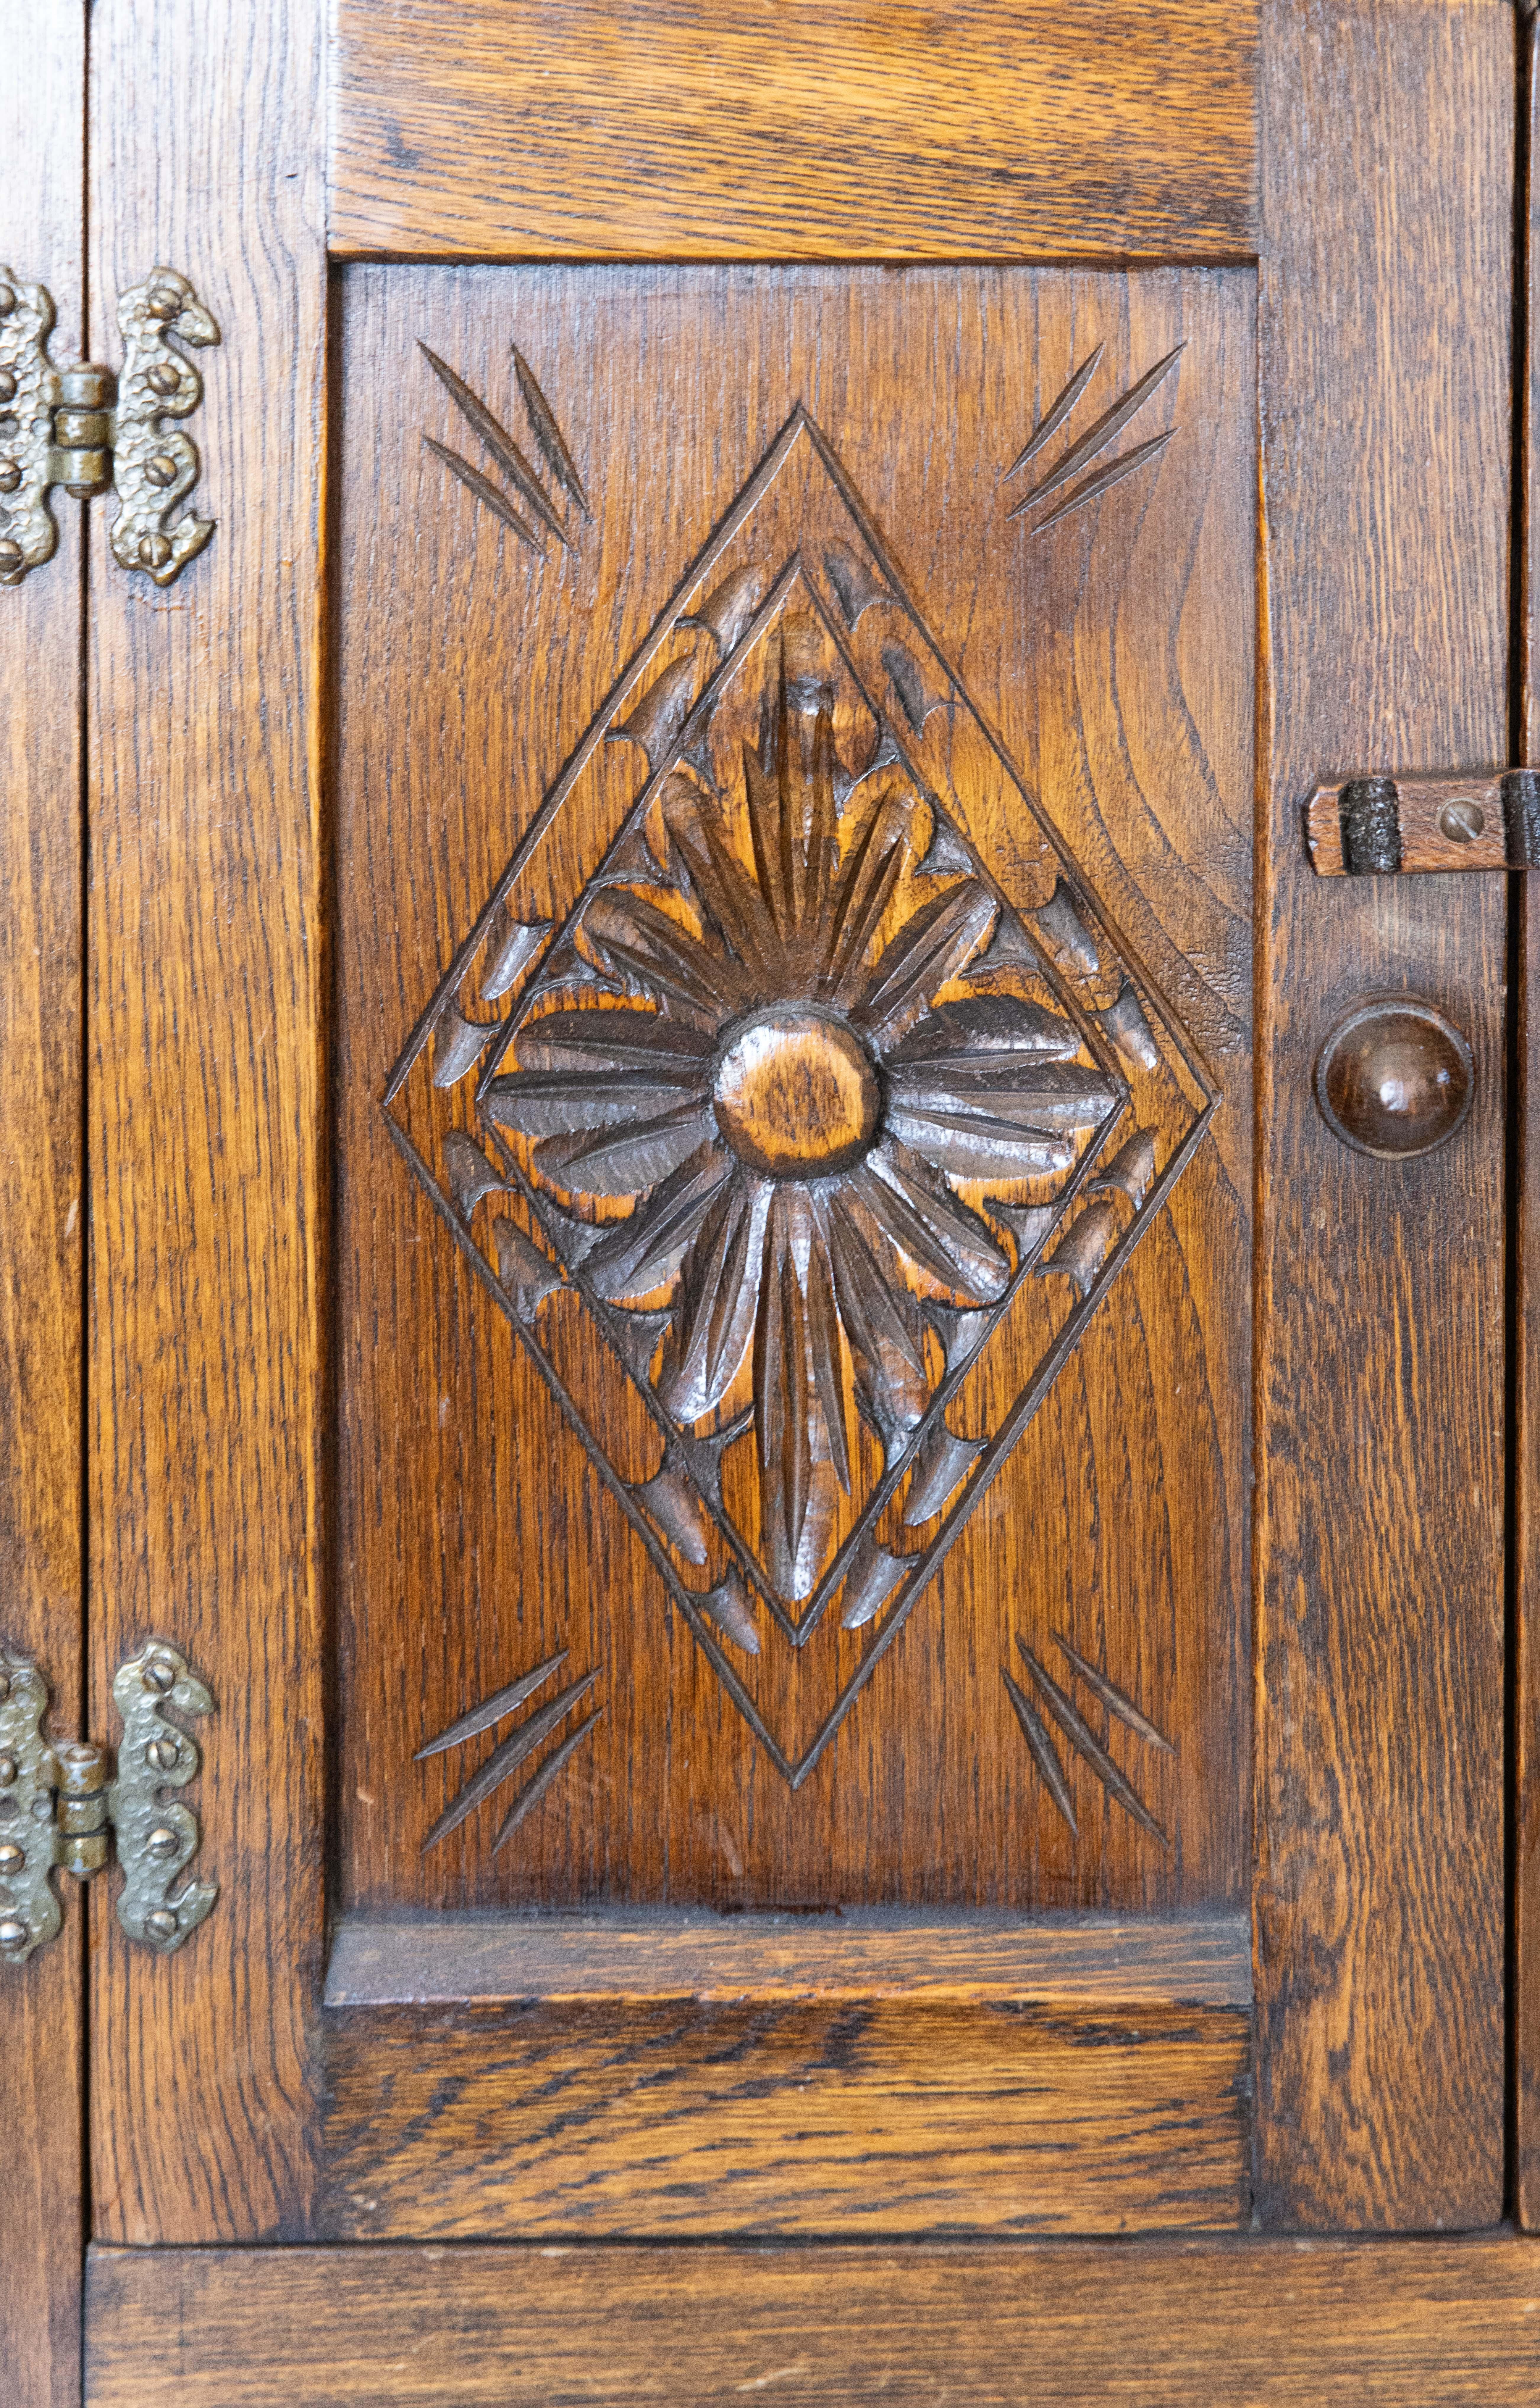 Antiker Zwergschrank aus geschnitzter englischer Eiche im Stil des 17. Getäfelte Konstruktion mit zwei Türen, Eichelknöpfen, historischen Scharnieren und schöner Patina.